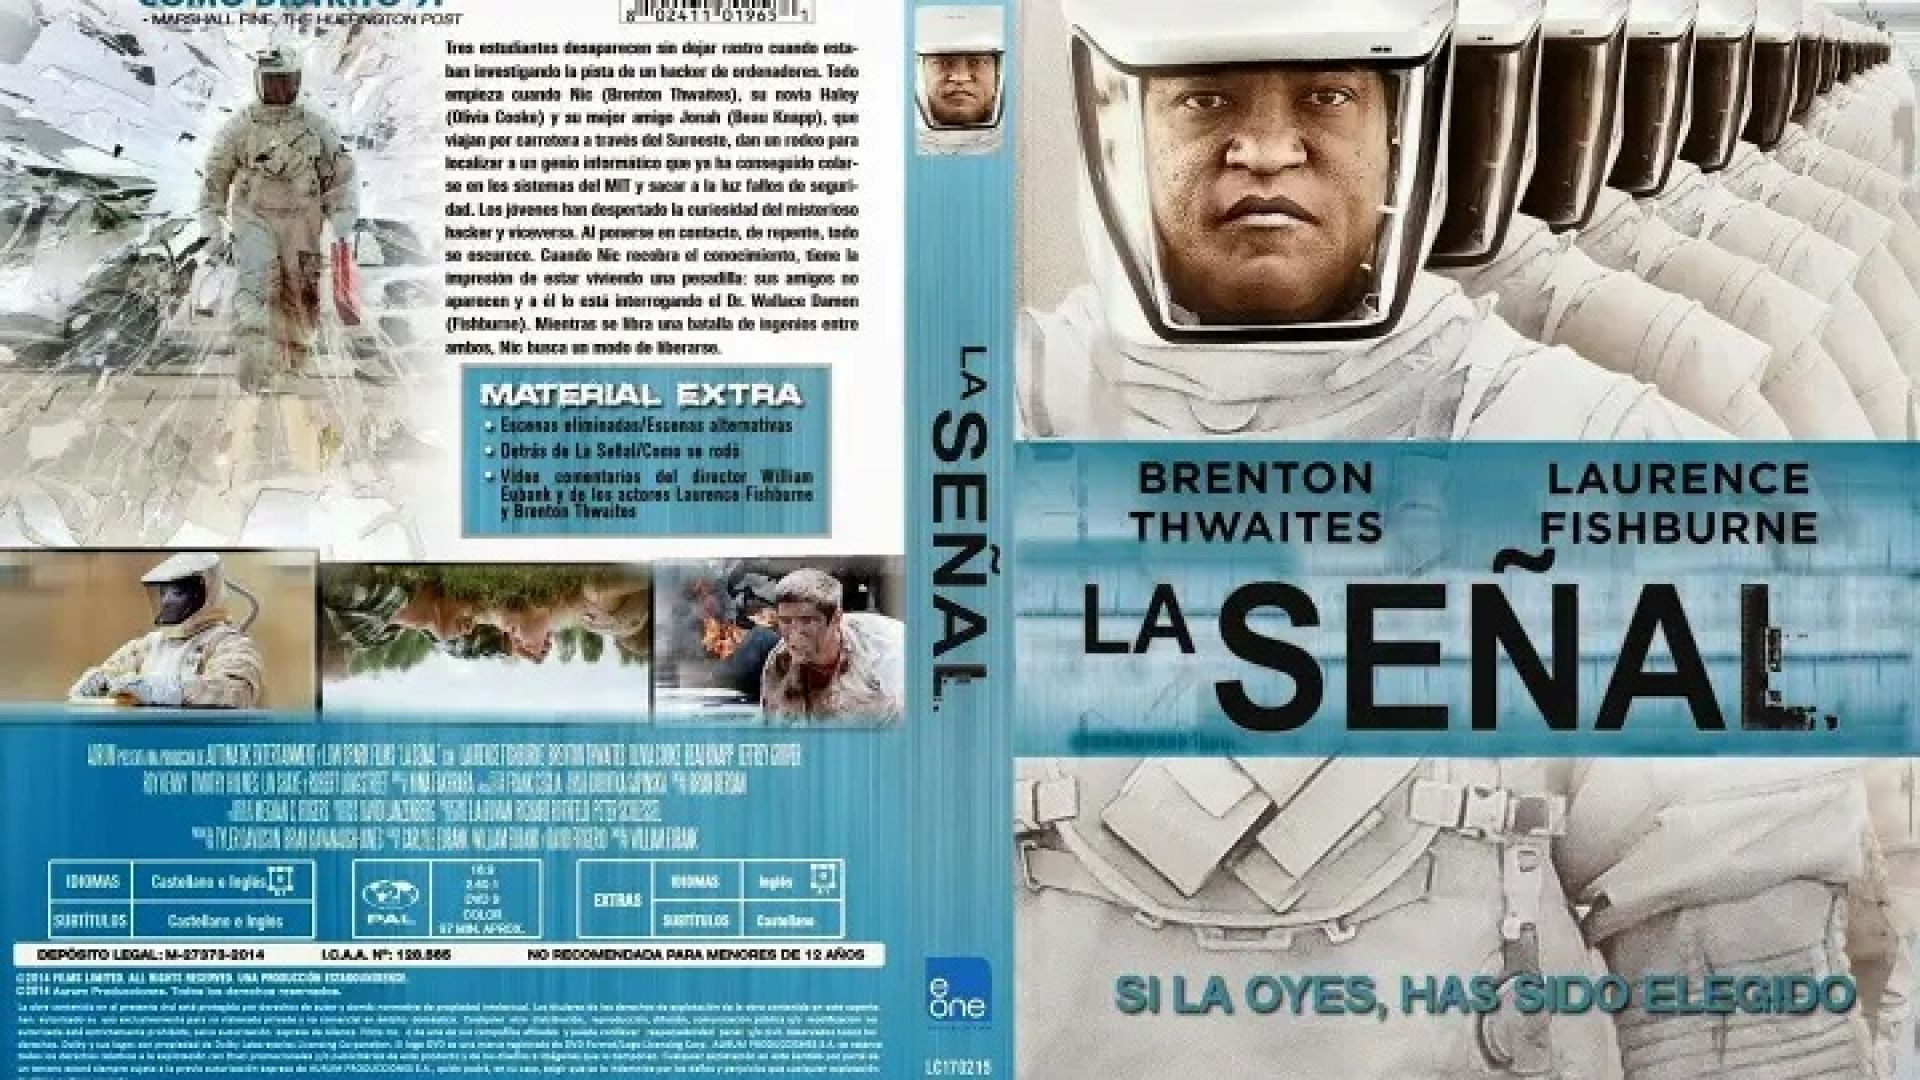 La Señal (2014) cas.